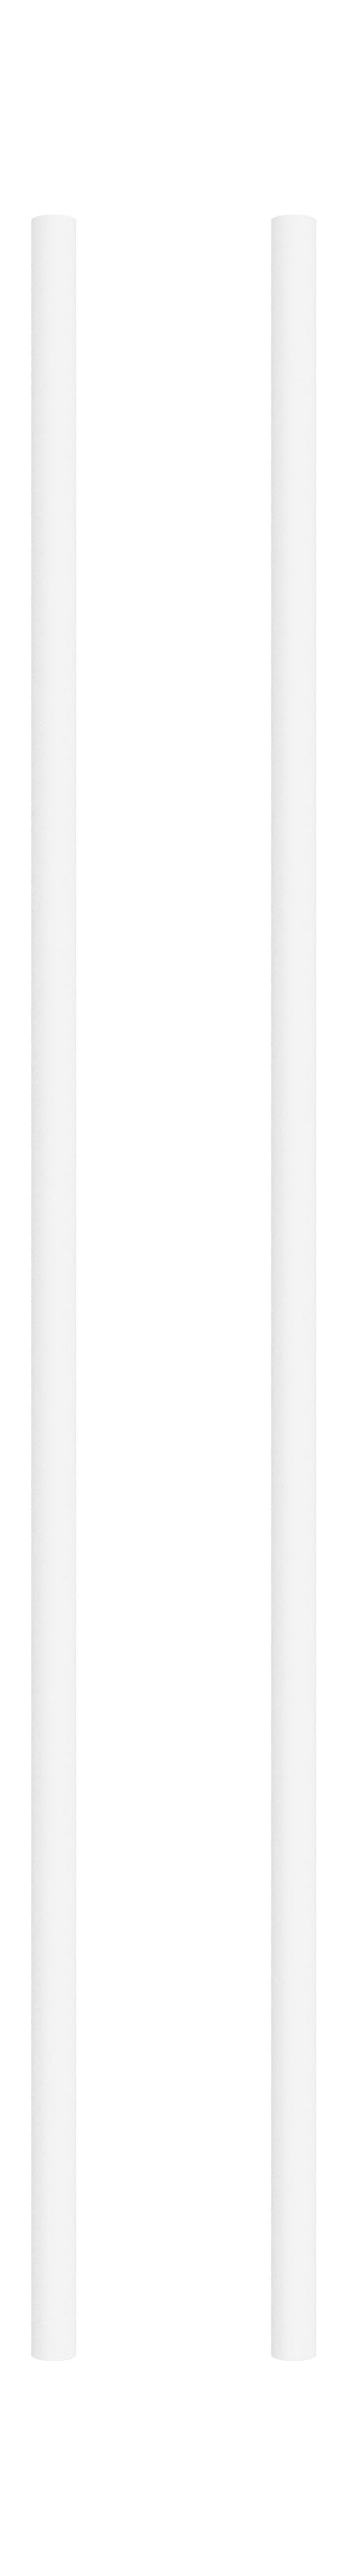 Moebe hyller system/vegghyller 85 cm hvitt, sett med 2